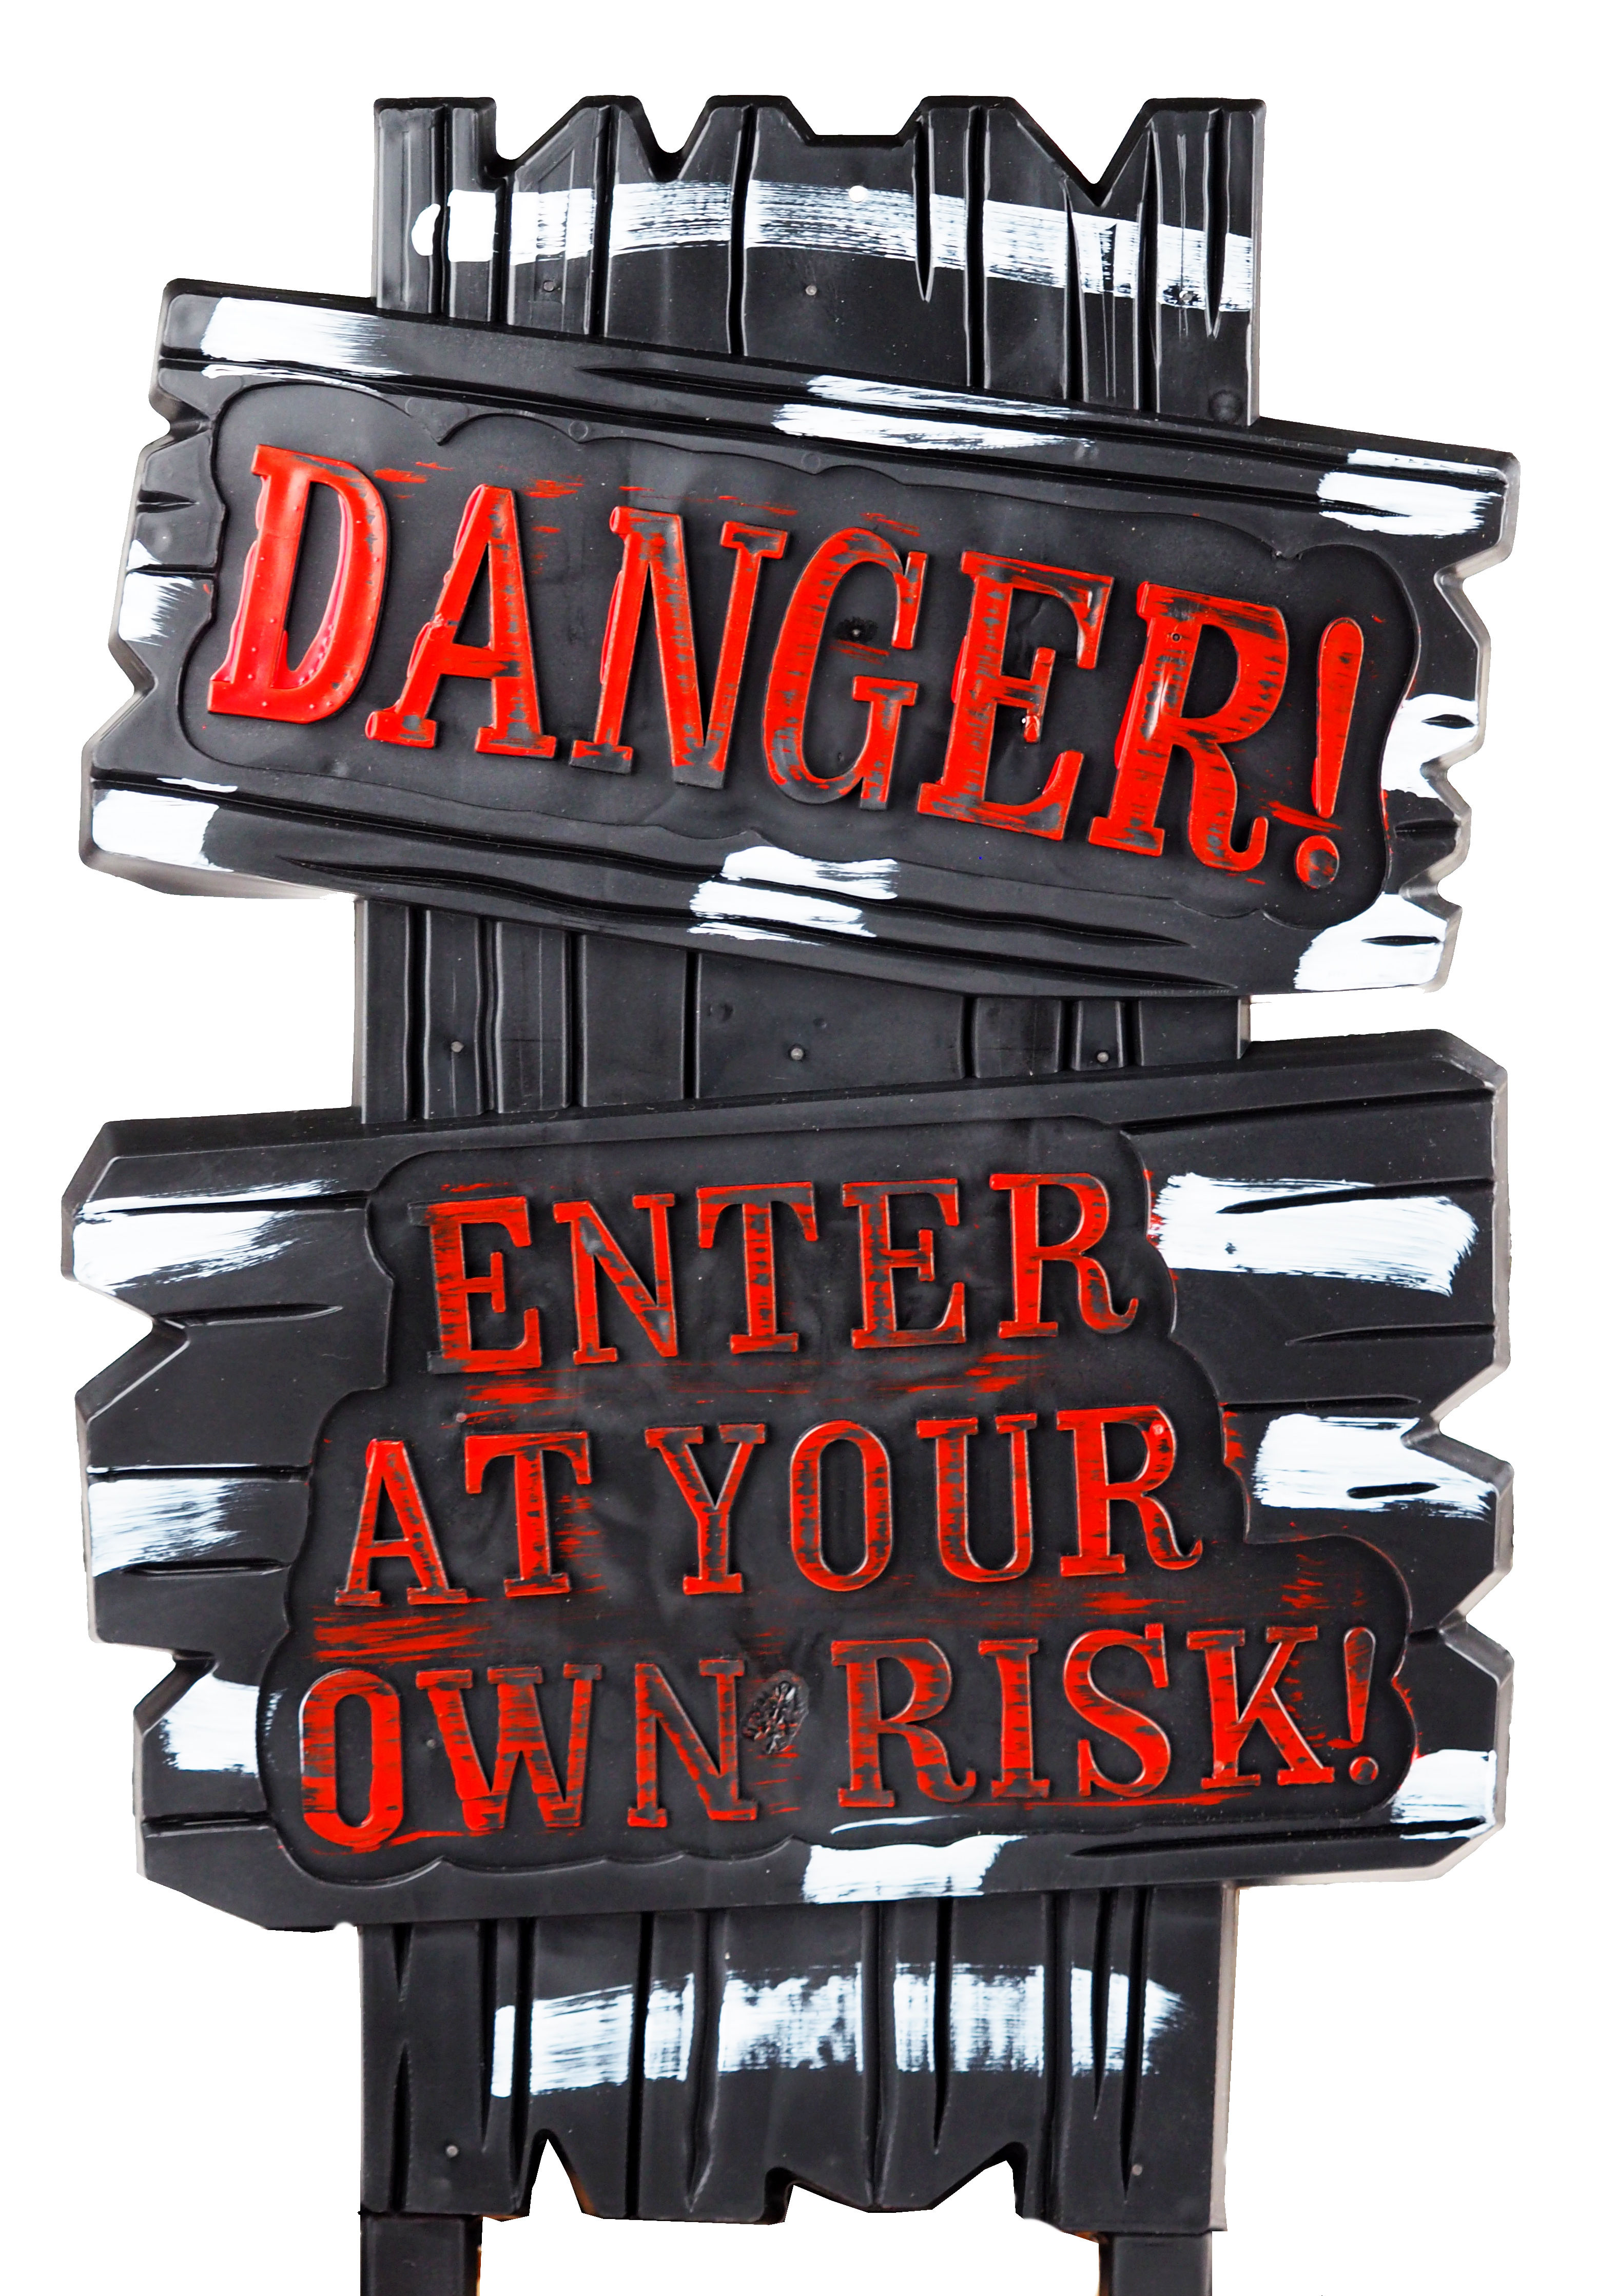 Halloween Garden Lawn Sign Decoration - Danger Enter At Own Risk (Set of 2)